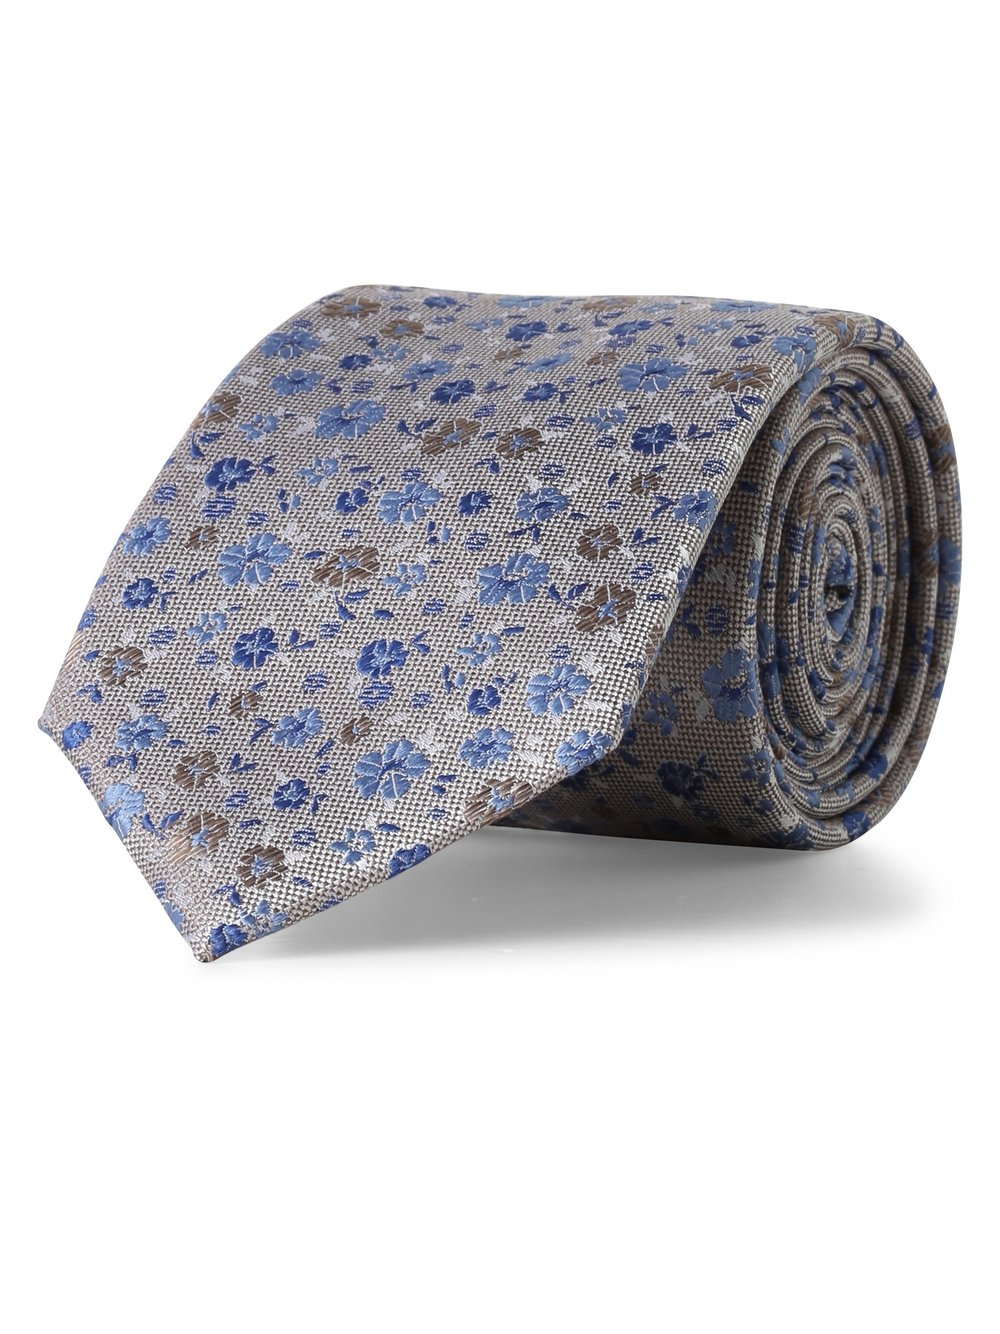 Andrew James New York - Krawat jedwabny męski, niebieski|szary